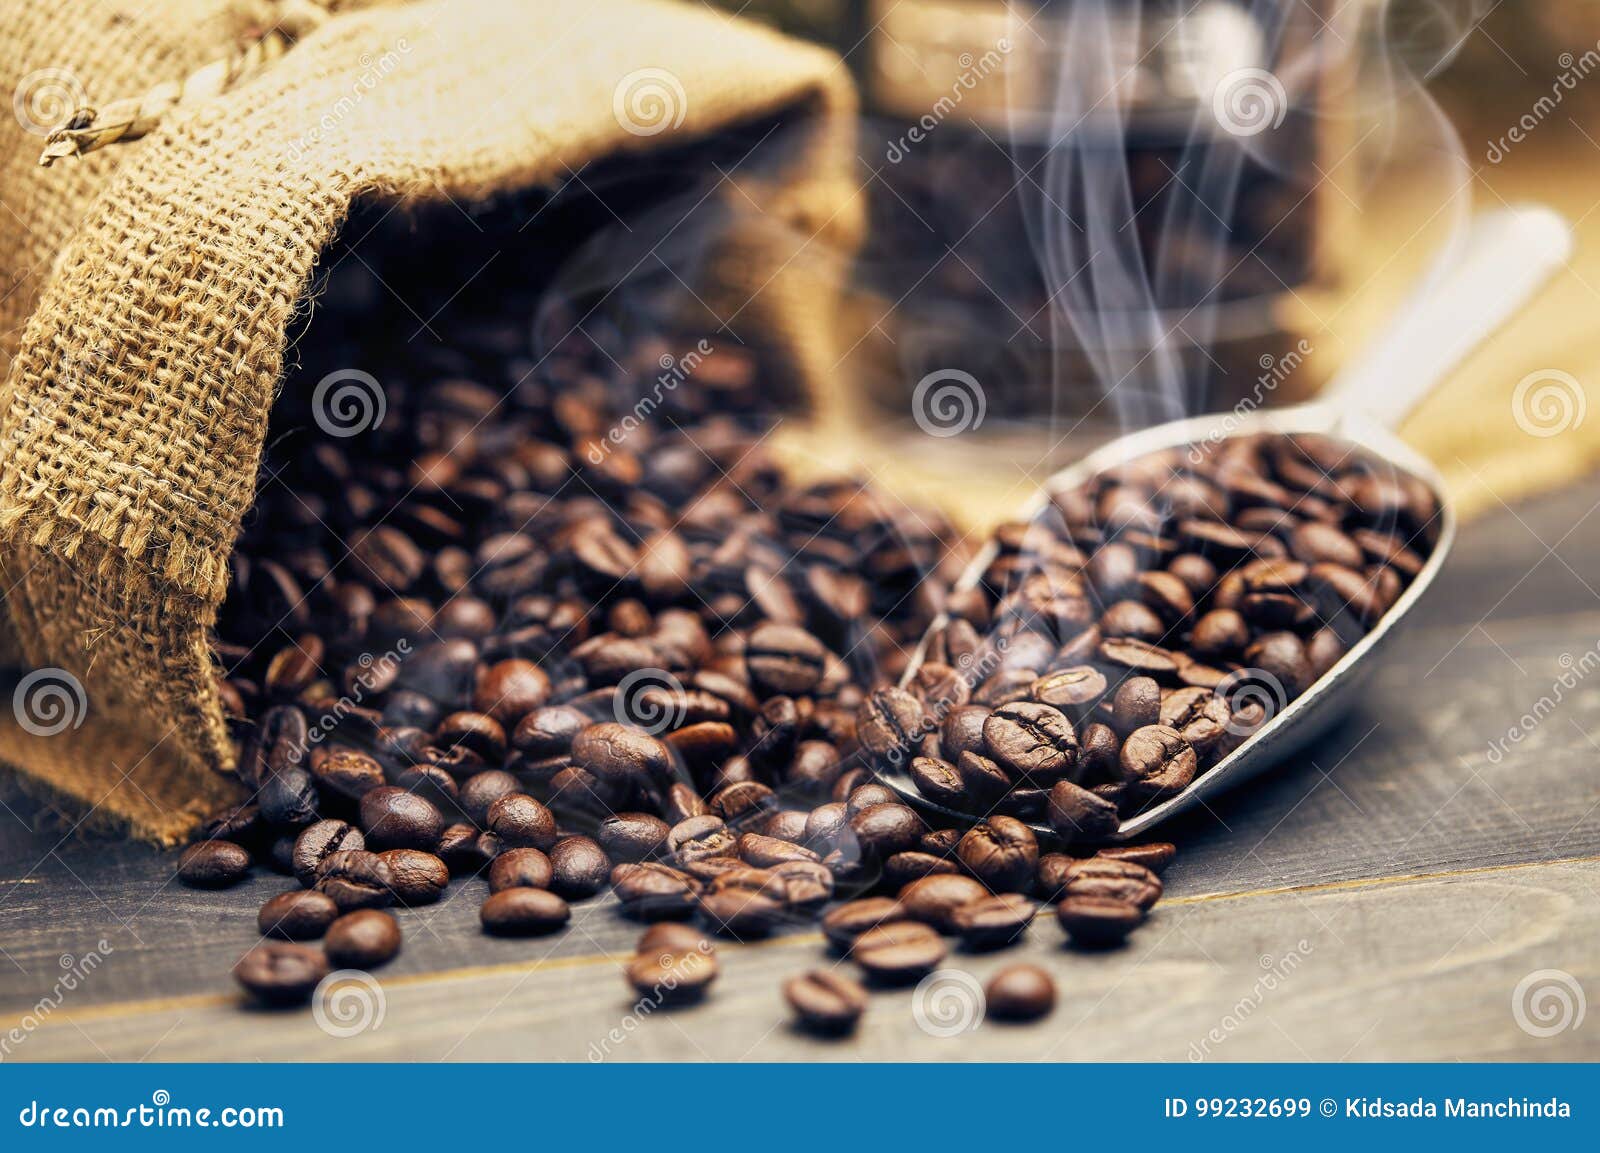 Зернышко гадание скучает. Фартуки кофе с зернами. Фотообои жареный кофе. Падающие жареные кофейные зерна. Гадать на кофейном зерне скучает ли он.